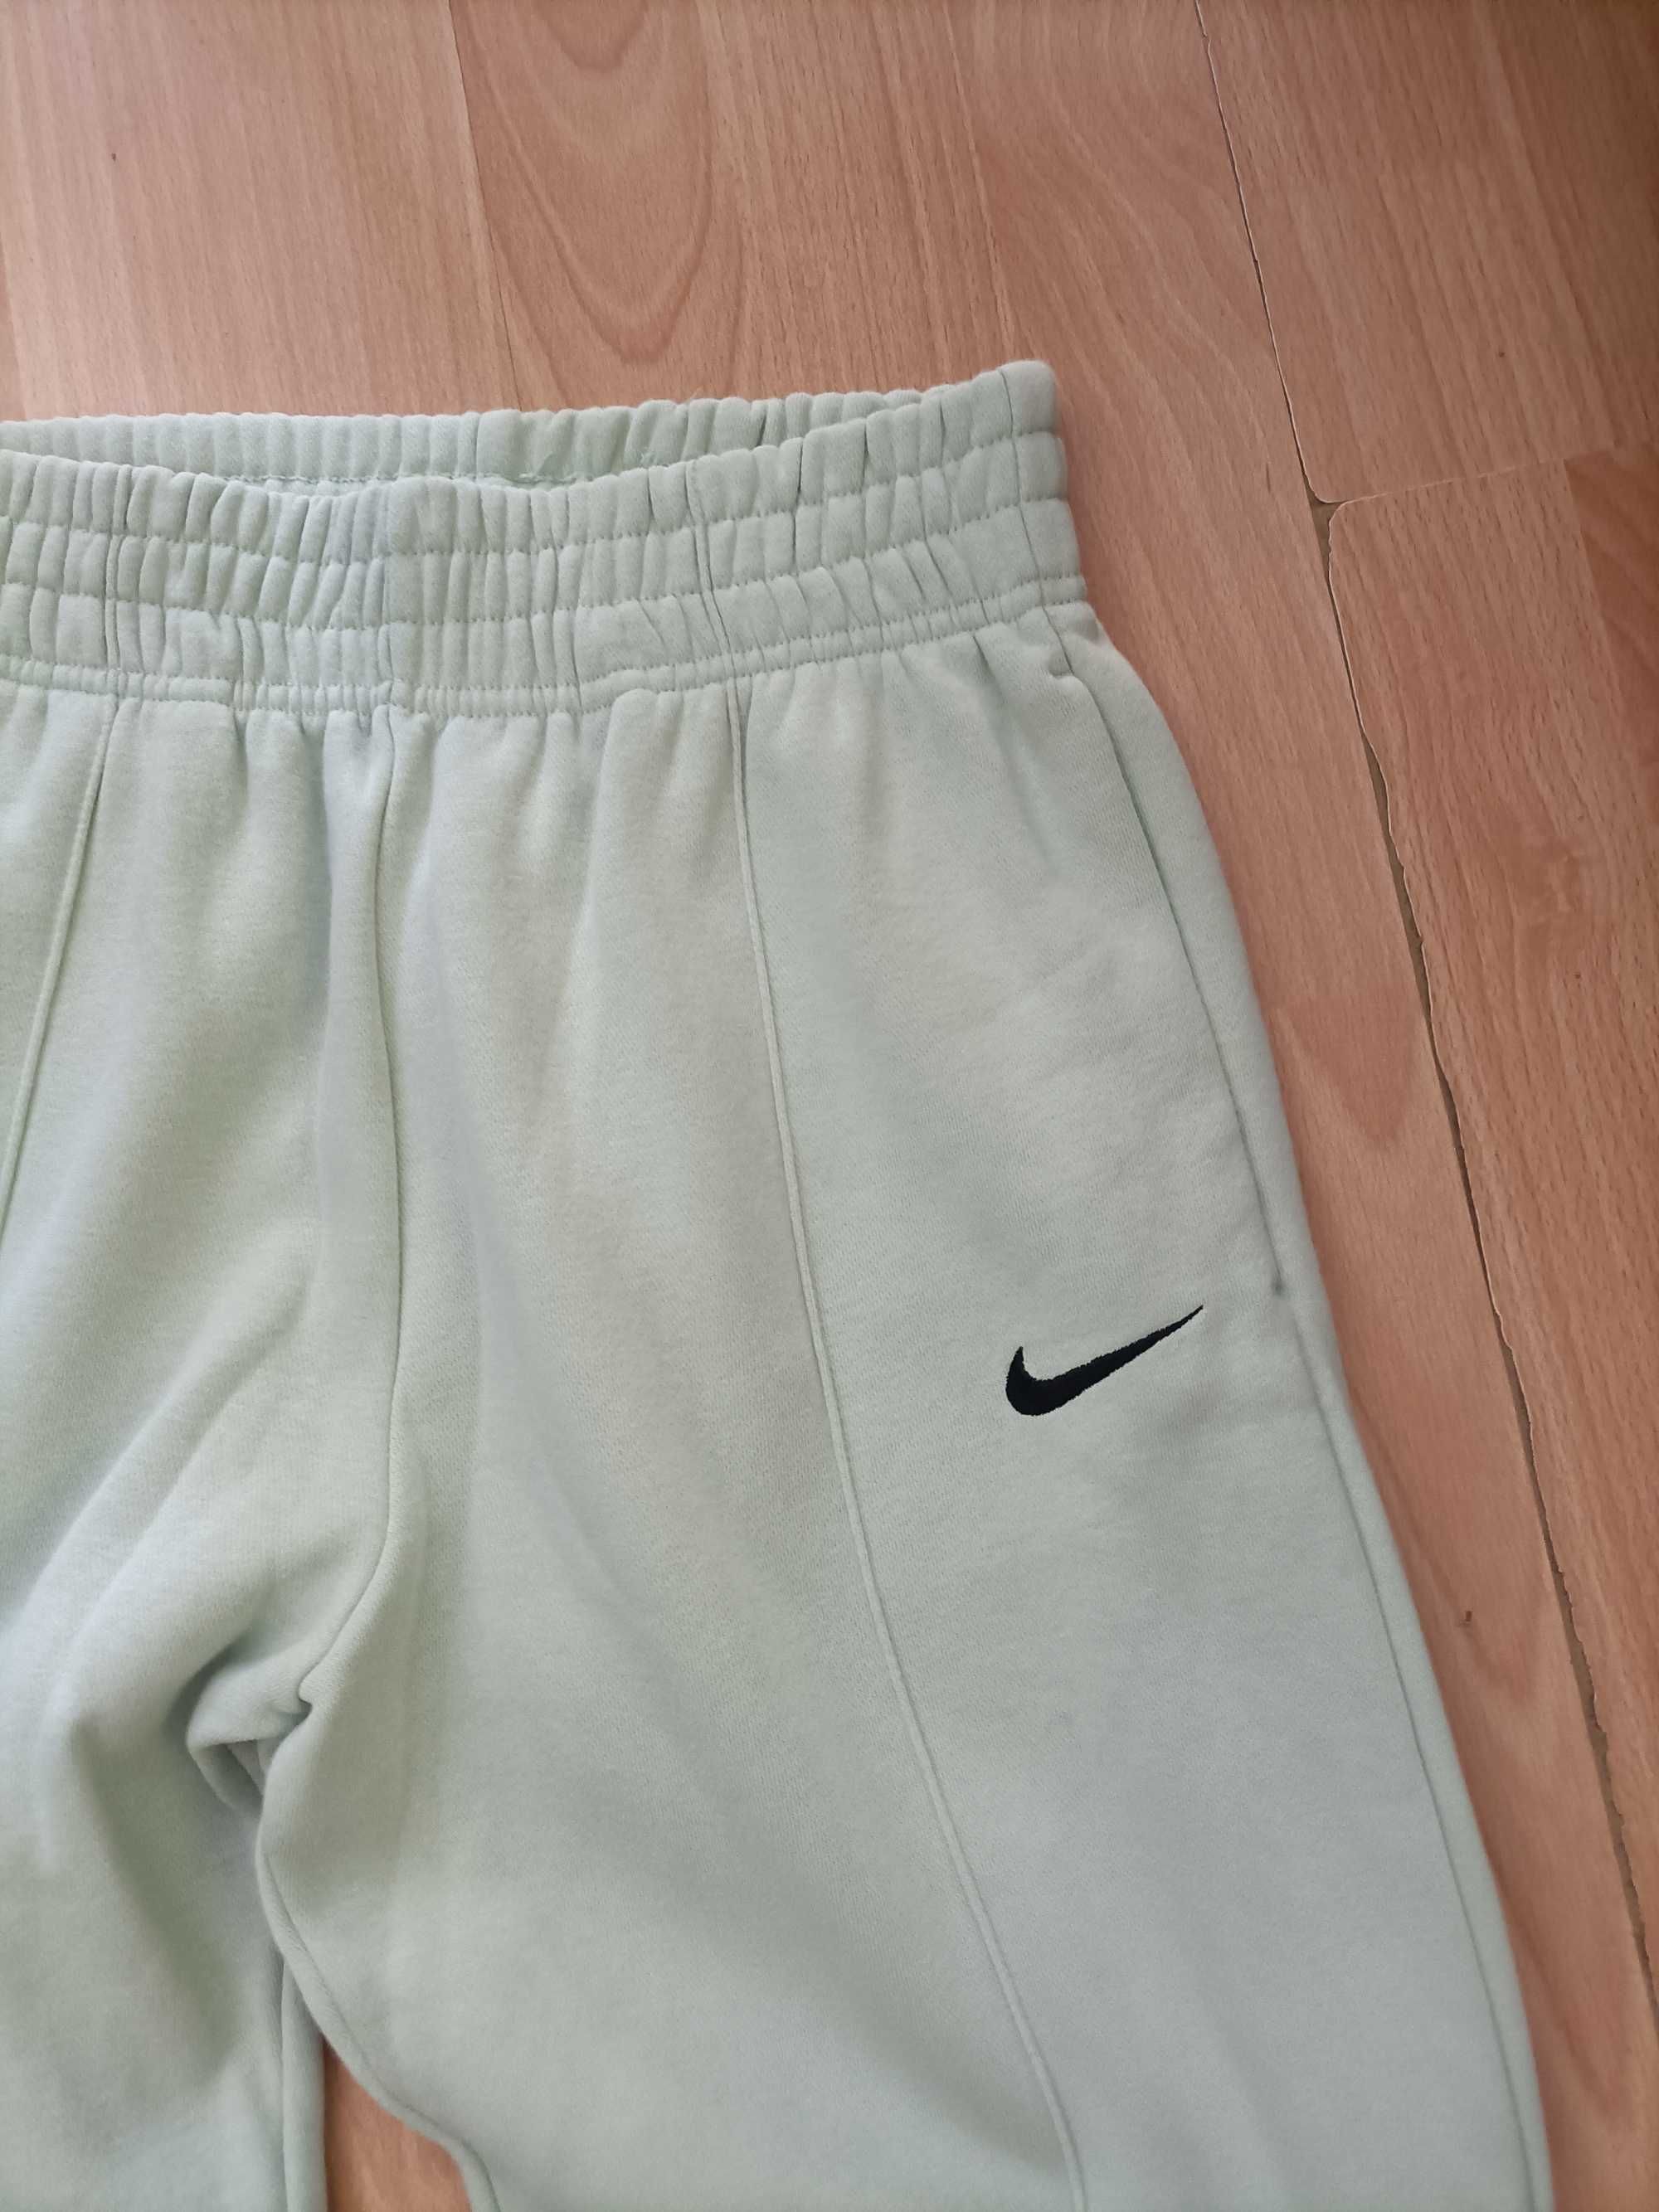 Nike spodnie dresowe zielone XS